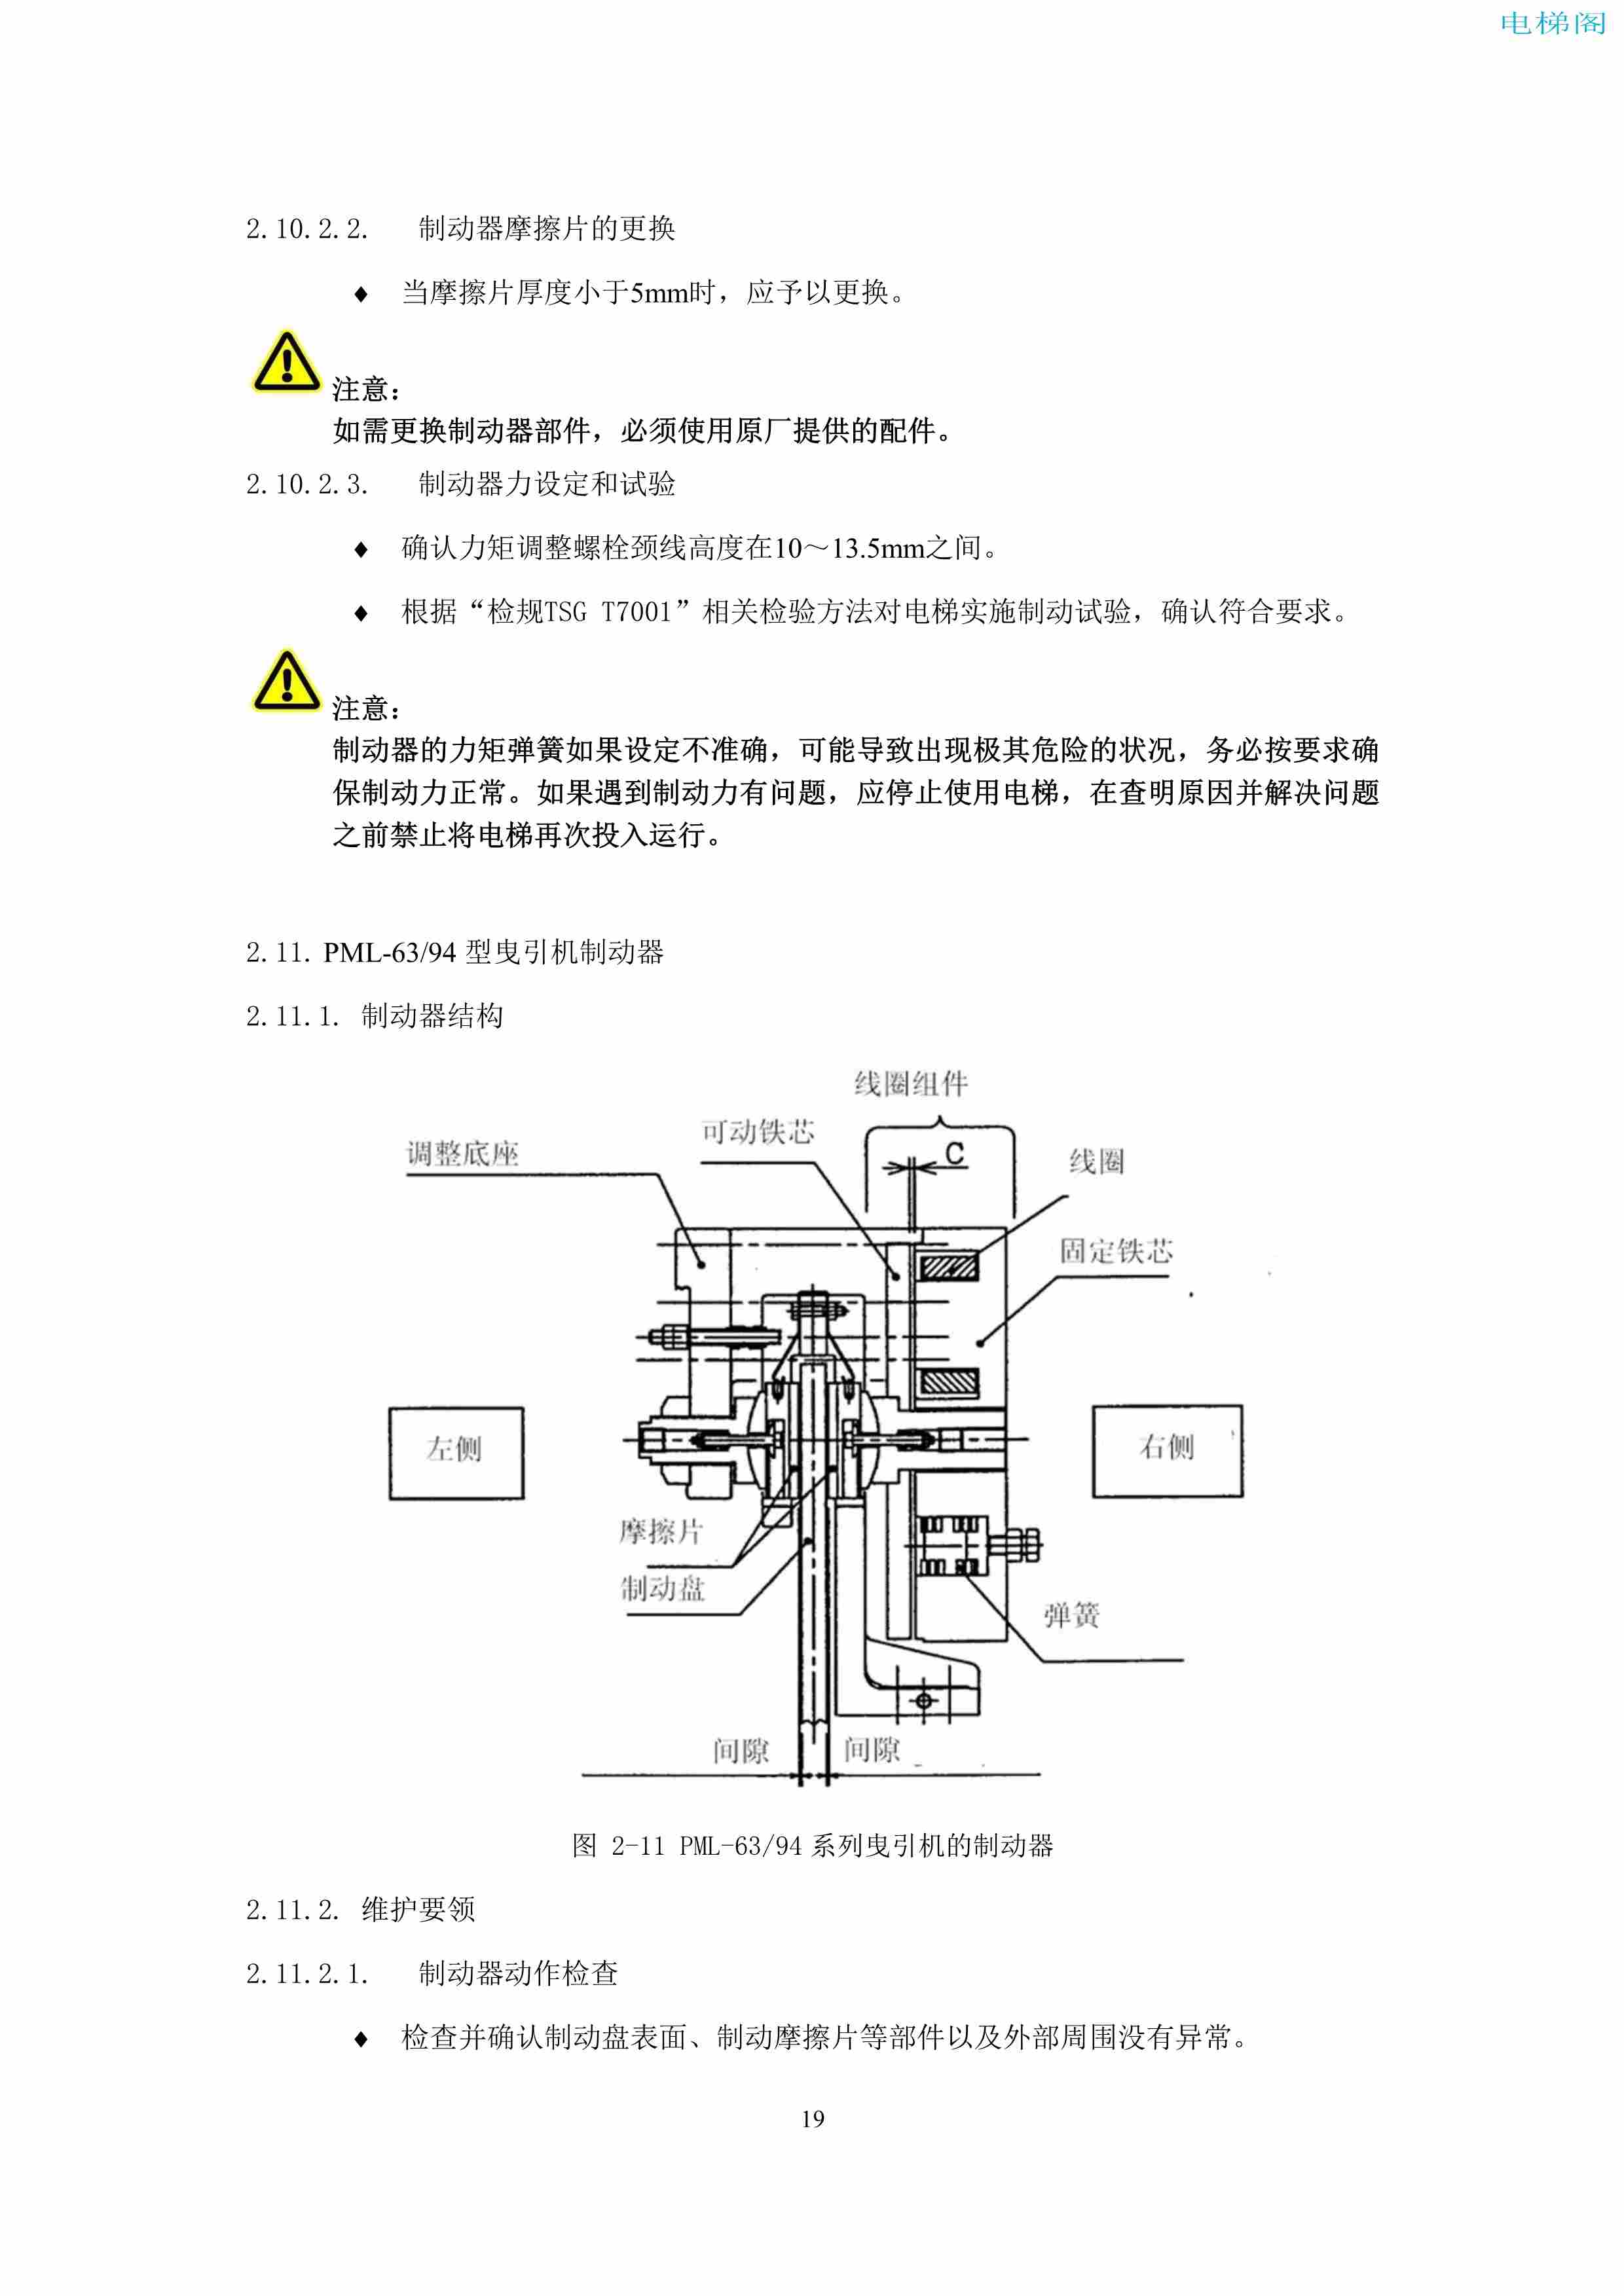 上海三菱电梯有限公司电梯制动器维护作业要领汇编_21.jpg